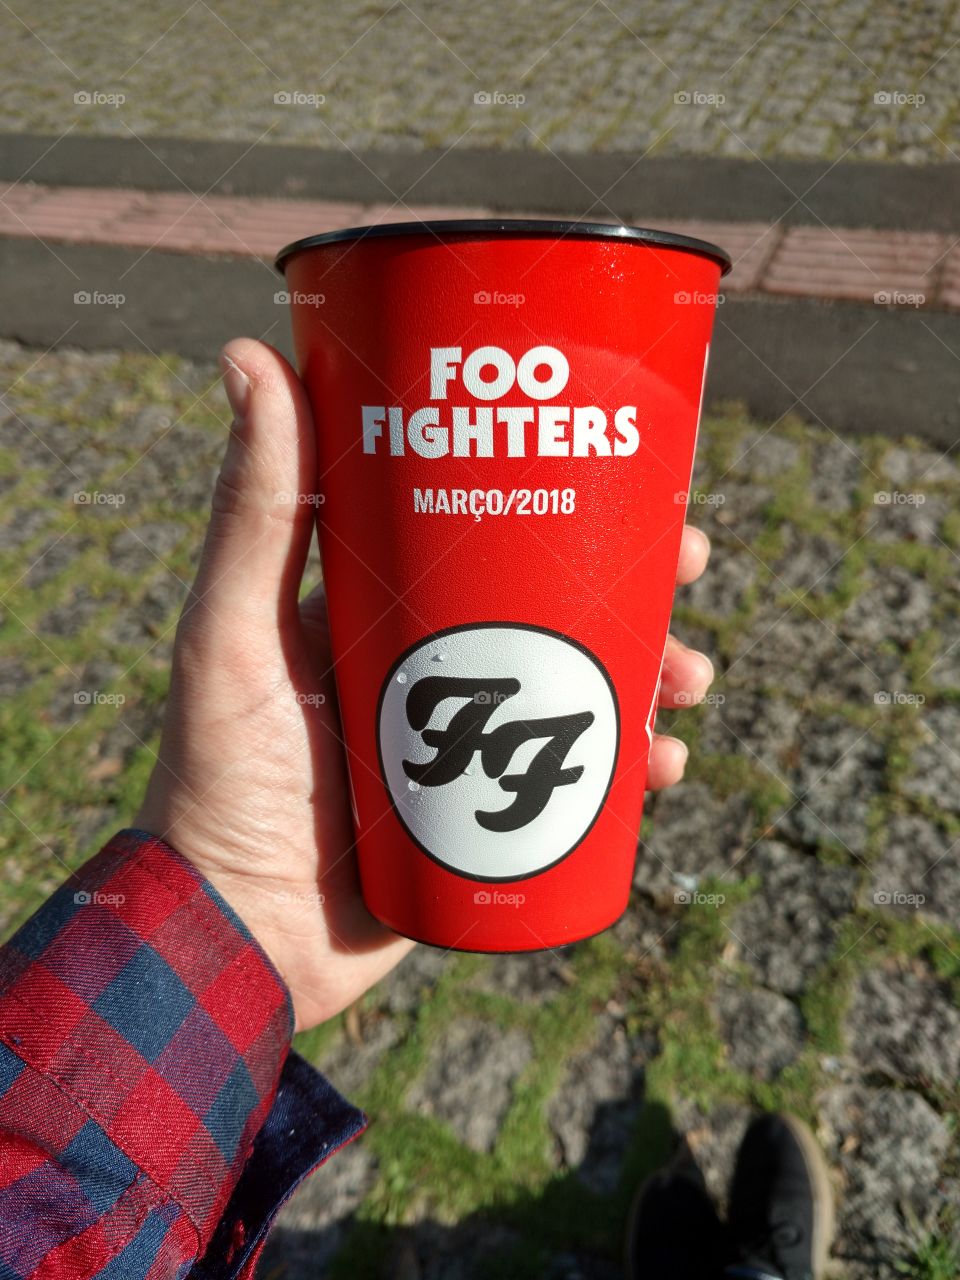 Foo Fighters - Curitiba - Brasil - 2018